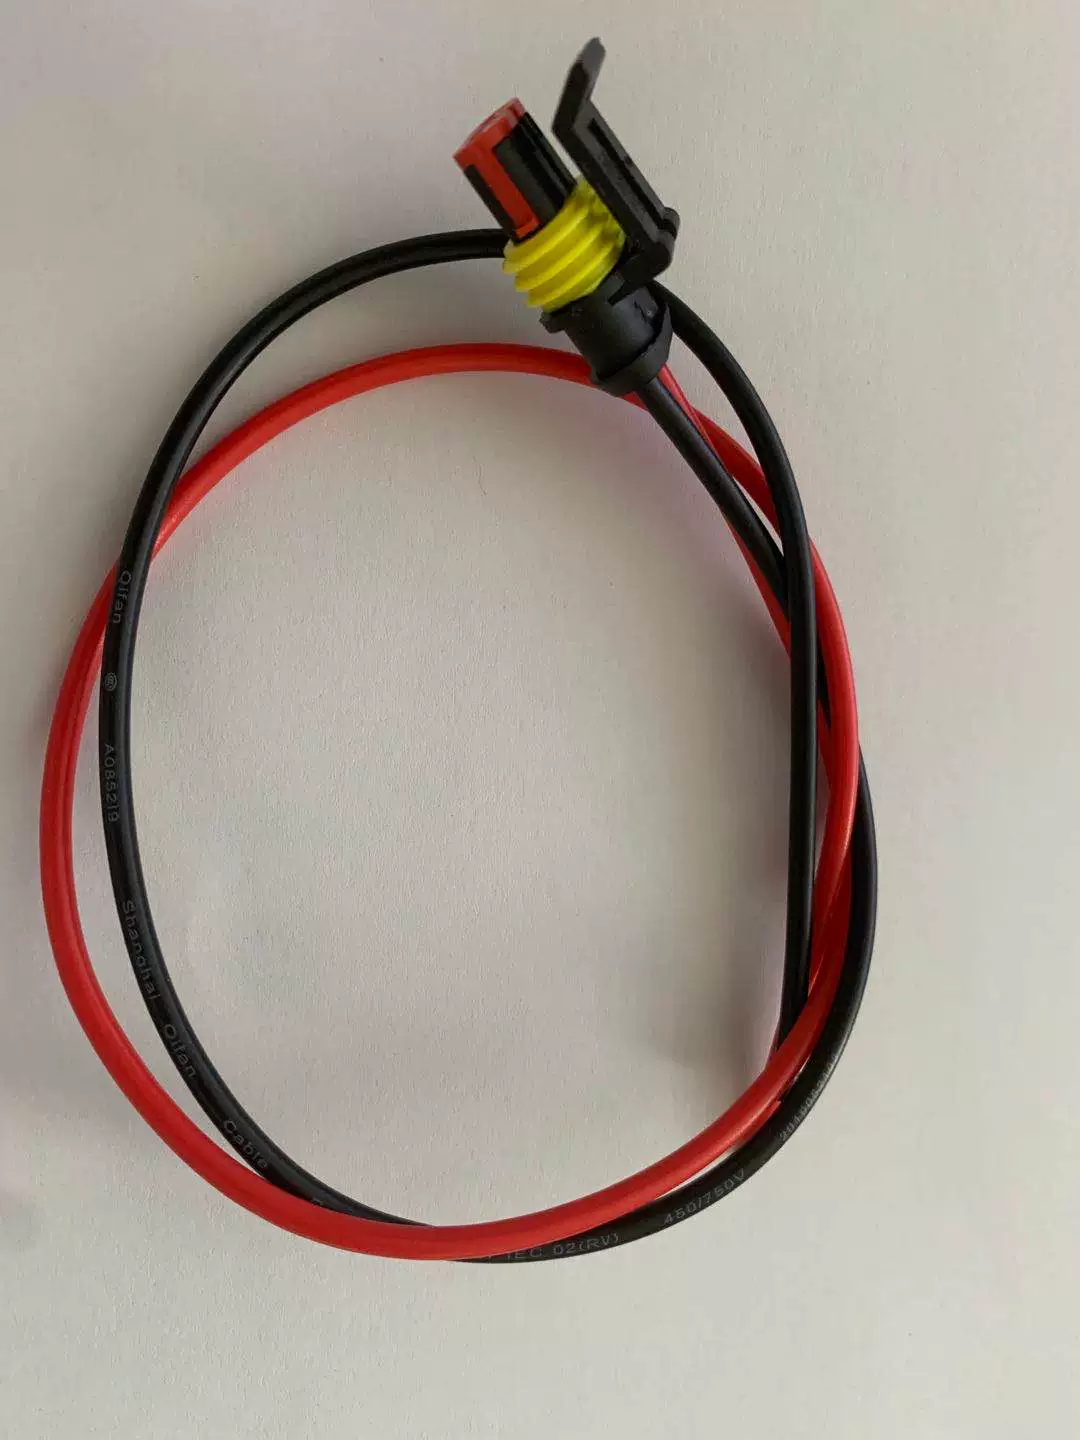 Ô tô dây điện cắm chống thấm nước chung kết nối với dòng 2p cắm thiết bị đầu cuối nam và nữ cặp plug-in plug-in các loại đầu nối dây điện cút nối dây điện 